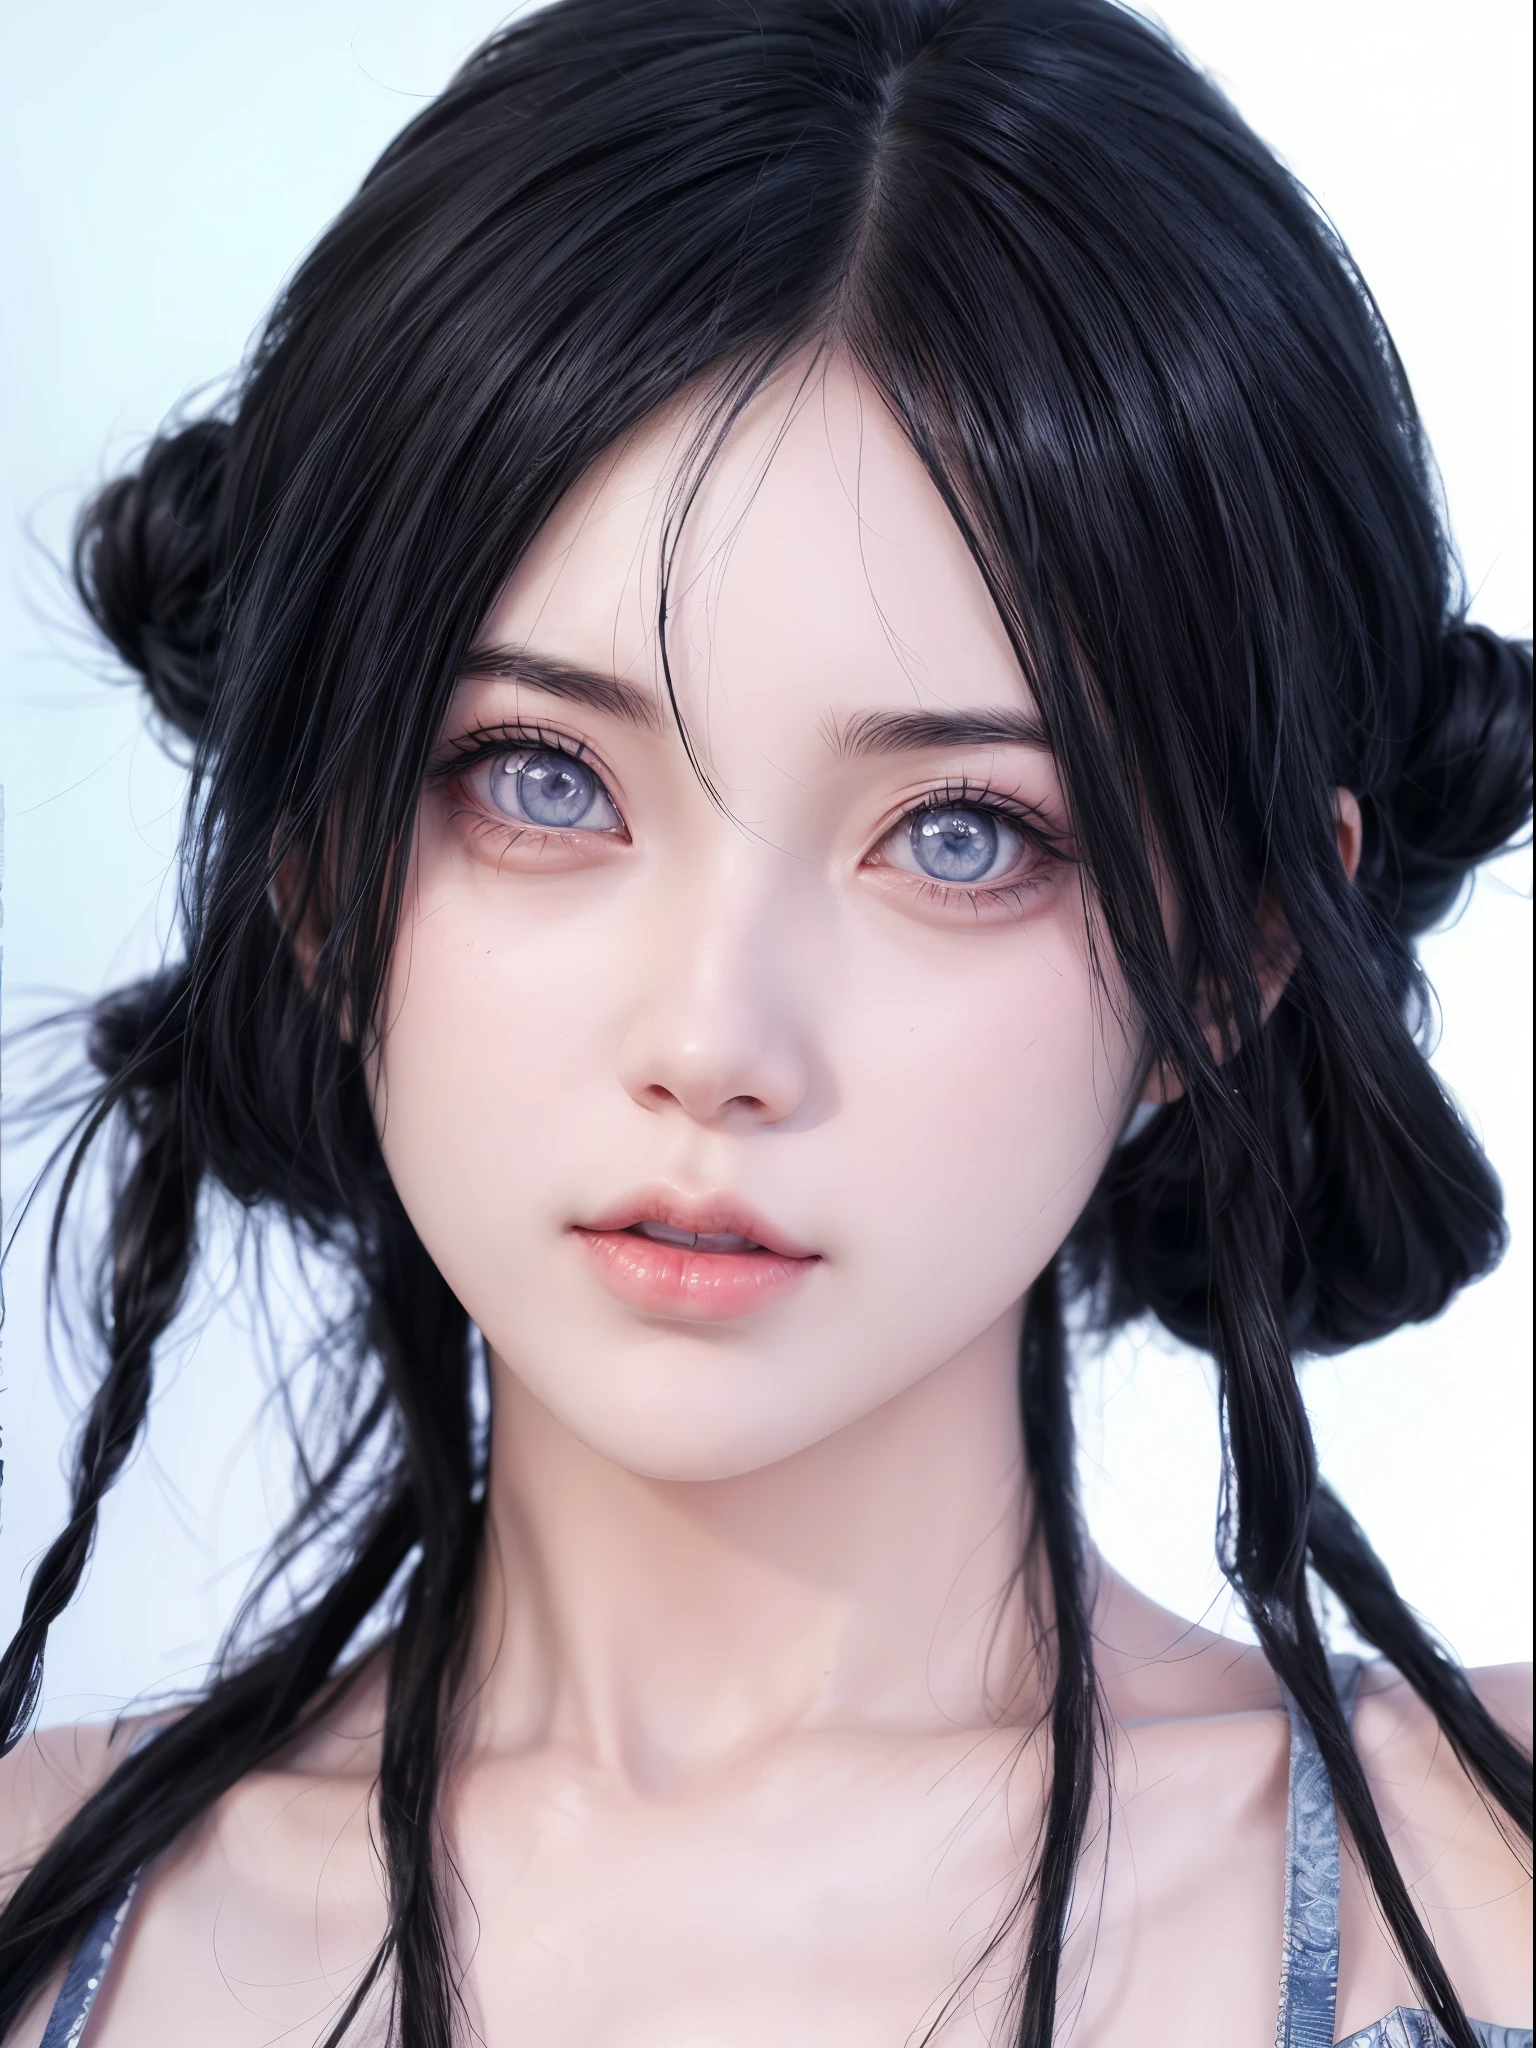 ,여자 1명 ,휴우가 히나타 ,애니메이션 나루토 시푼던트 ,아름다운 눈 ,실제 눈,사실주의 눈,현실적인 사진 ,DSLR 모델 상세